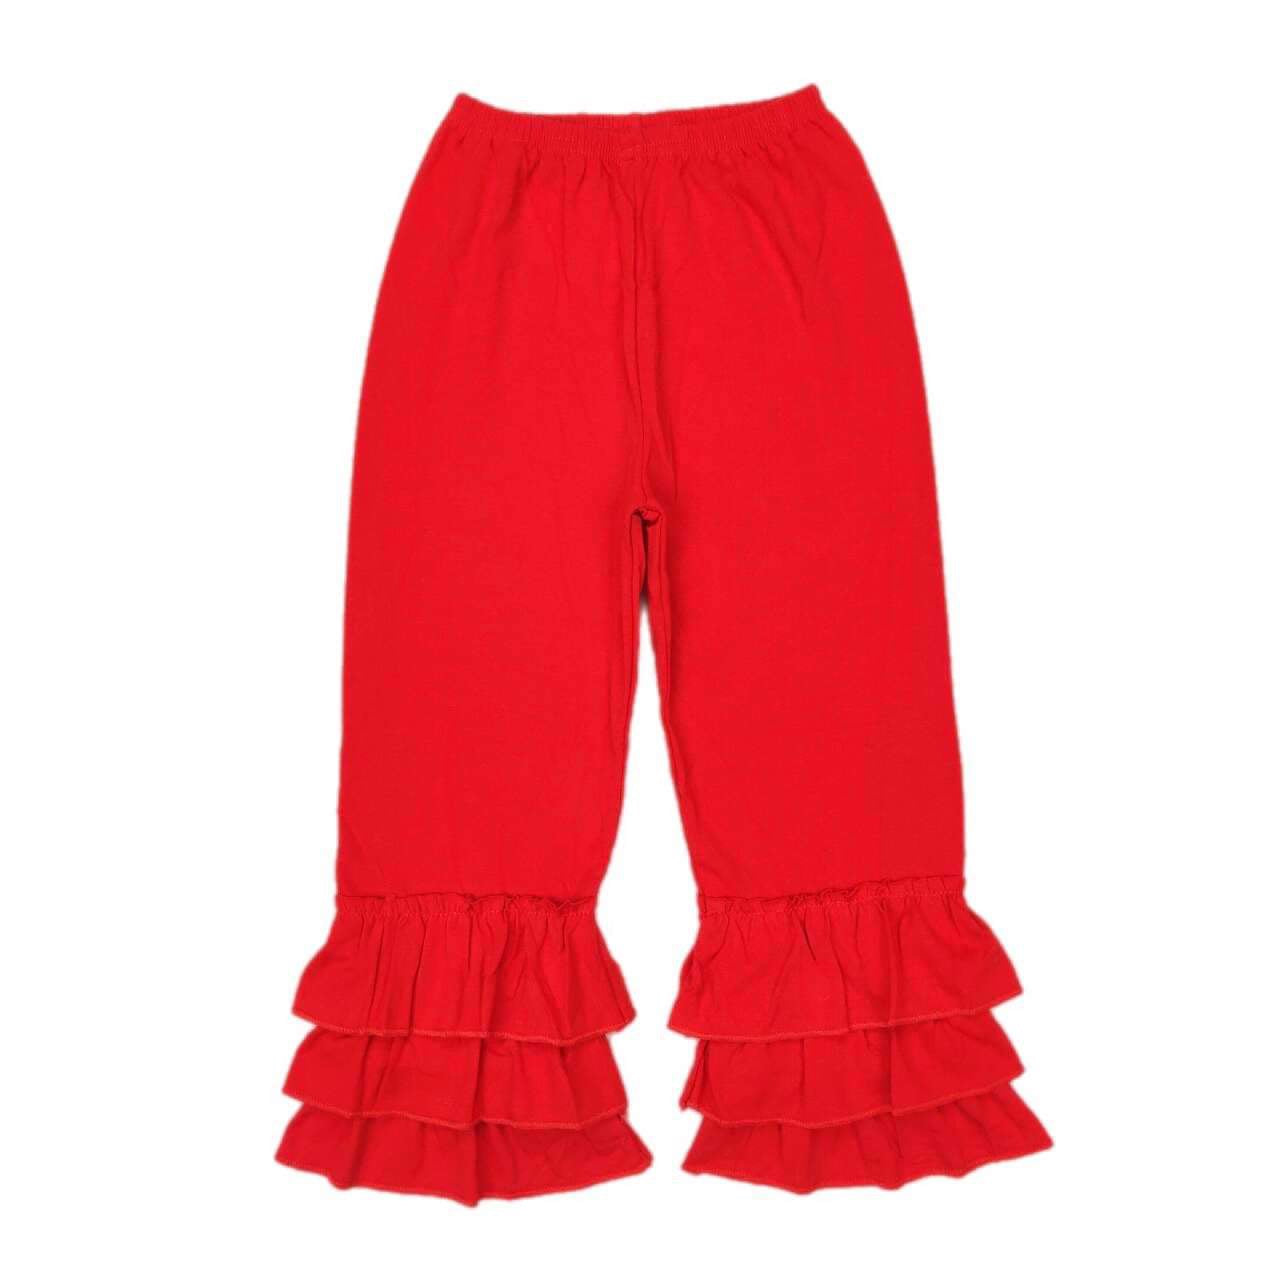 ᴡᴇᴇᴋʟʏ ᴘʀᴇ ᴏʀᴅᴇʀ Ruffle Pants (Bright Red)